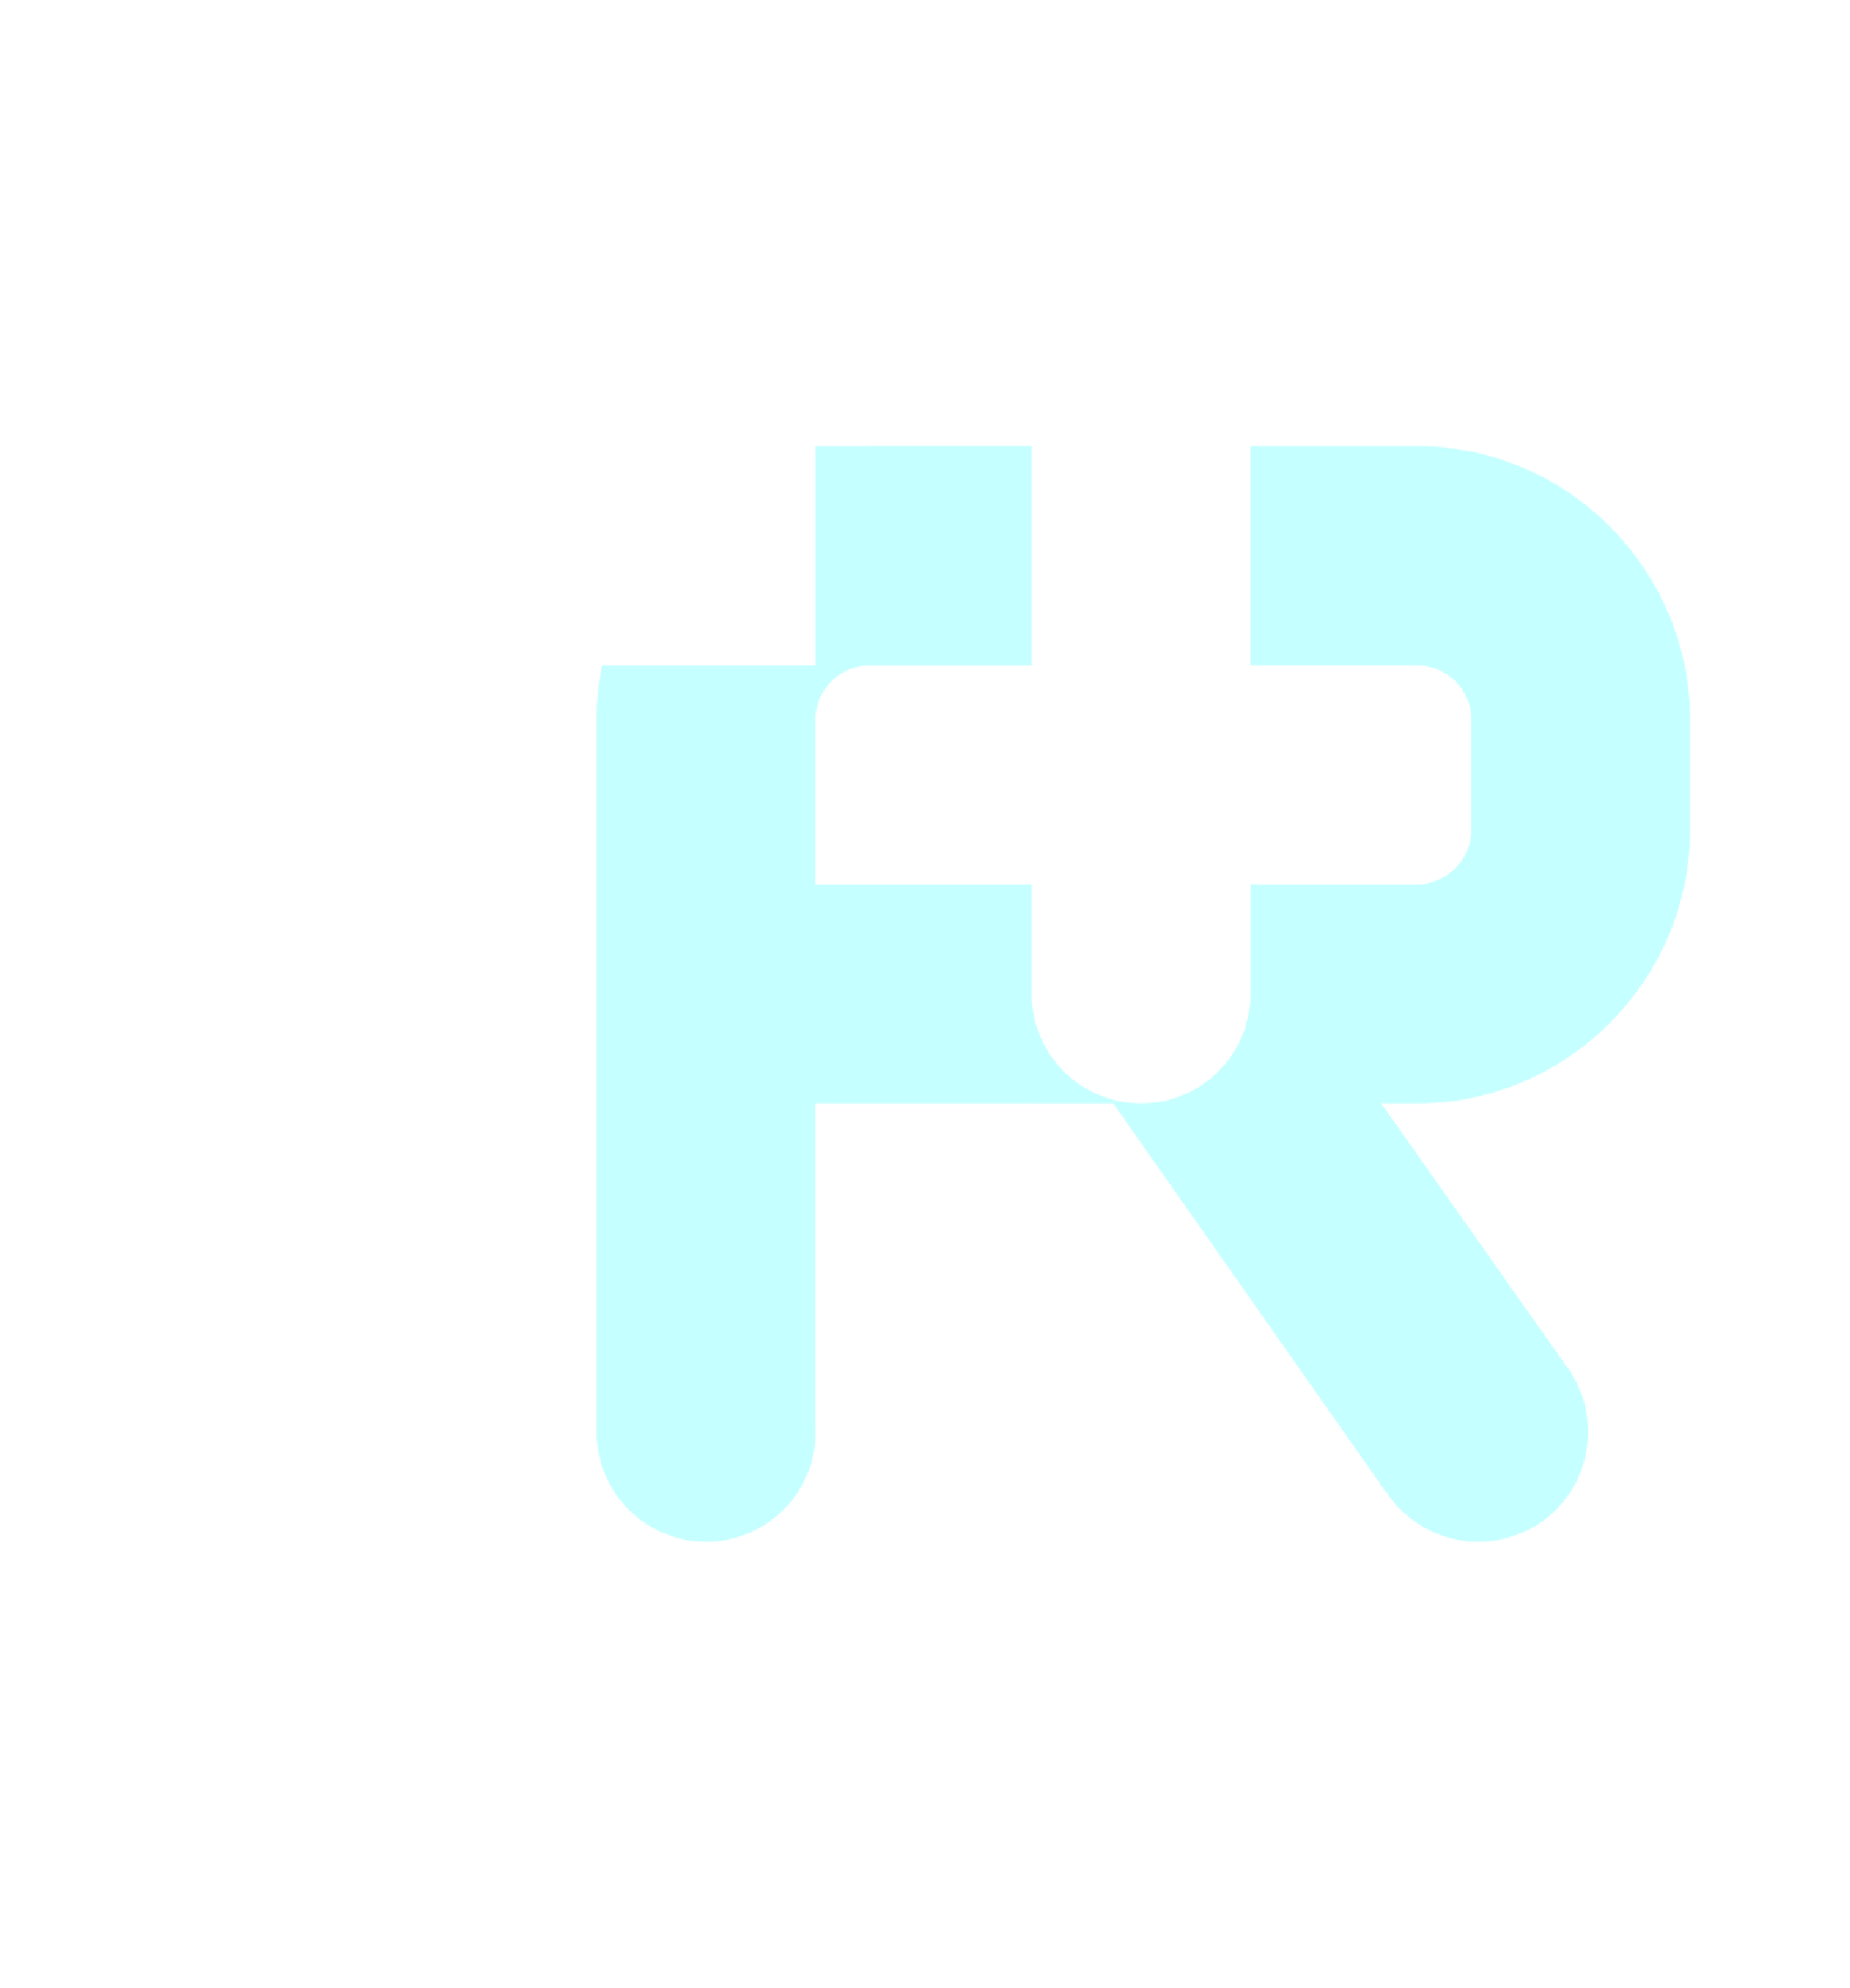 Argo's World